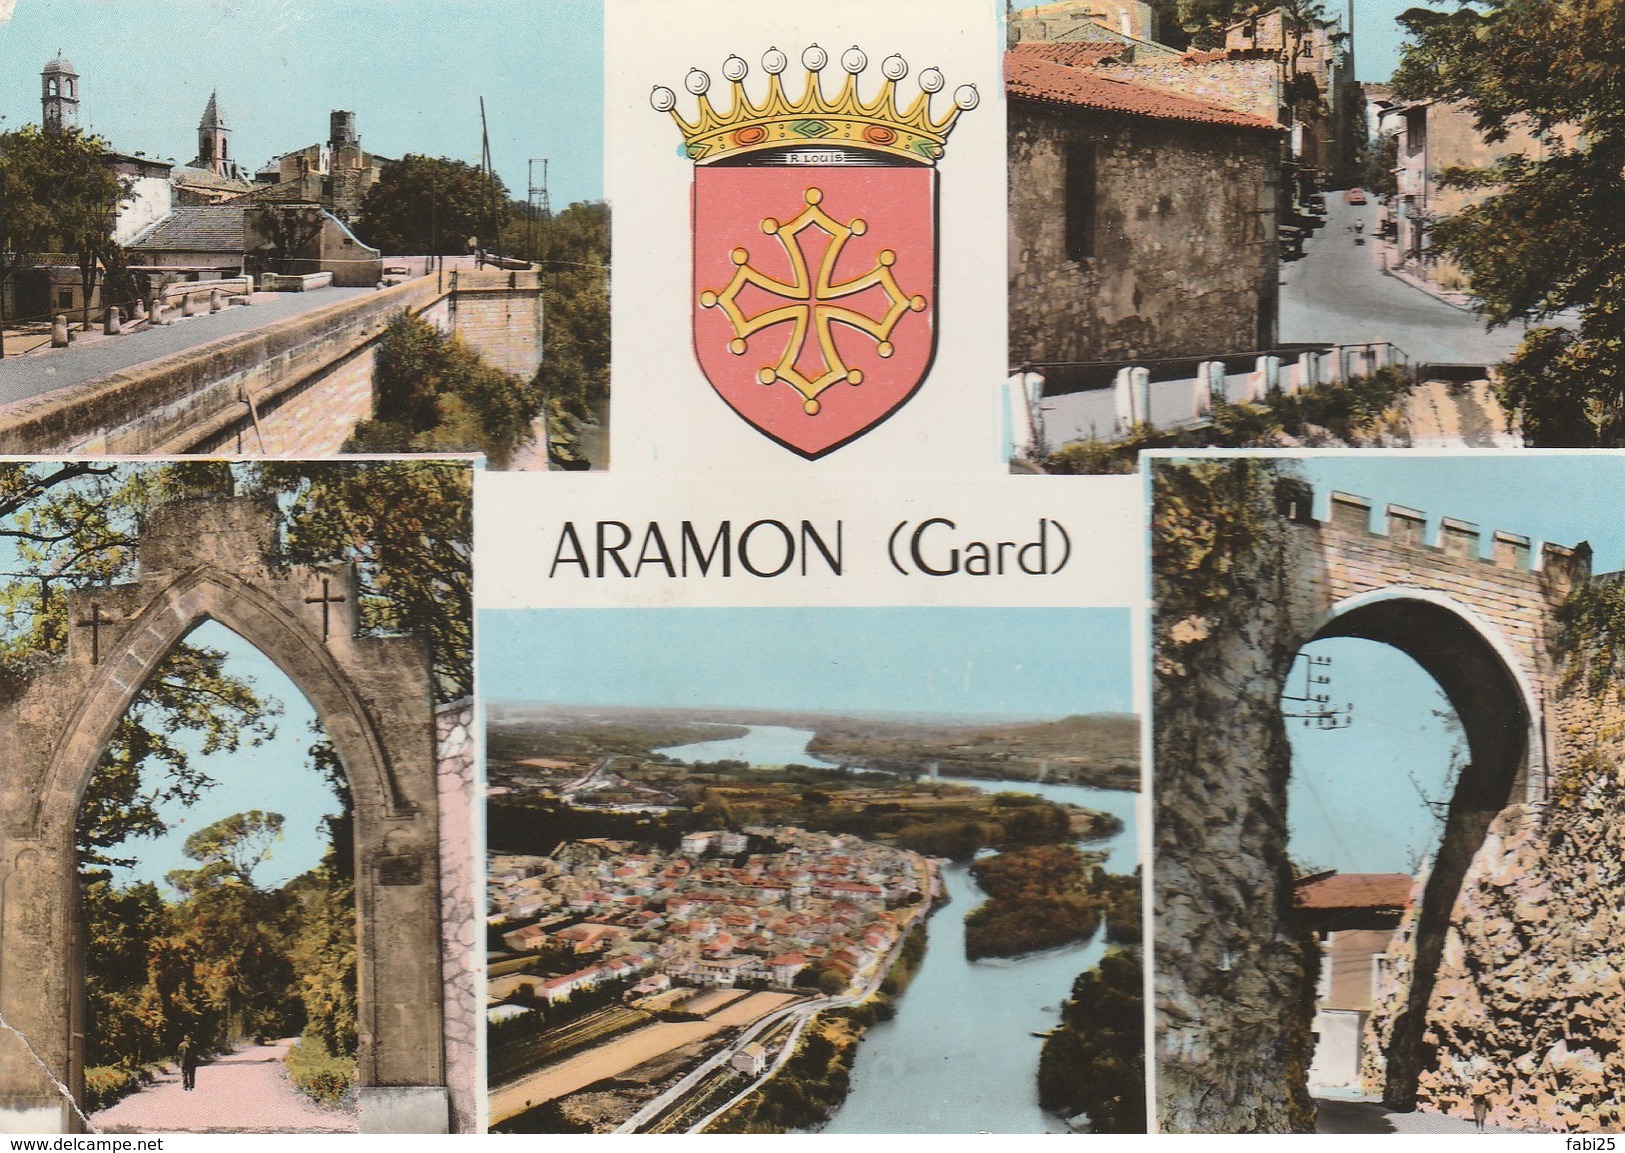 ARAMON - Aramon